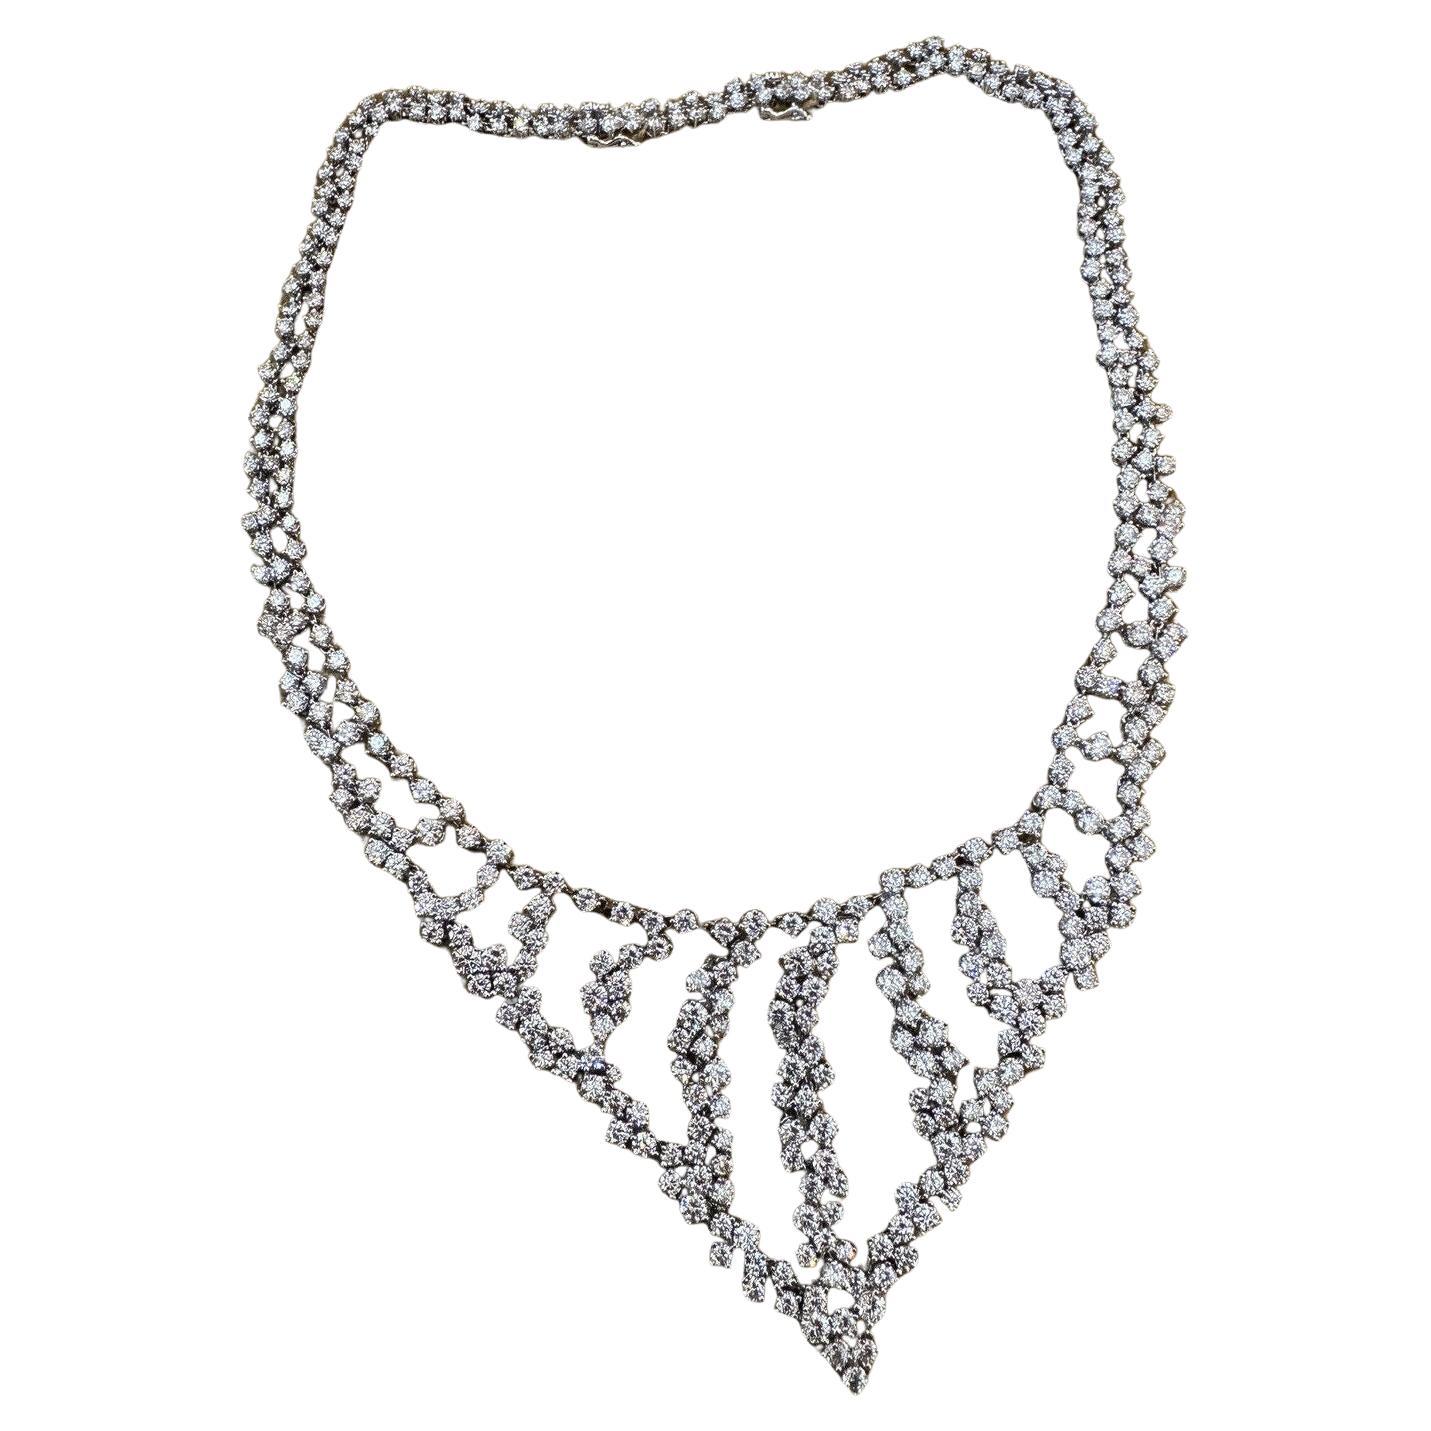 Round Brilliant Diamond Bib Necklace 25.00 cttw in 18k White Gold